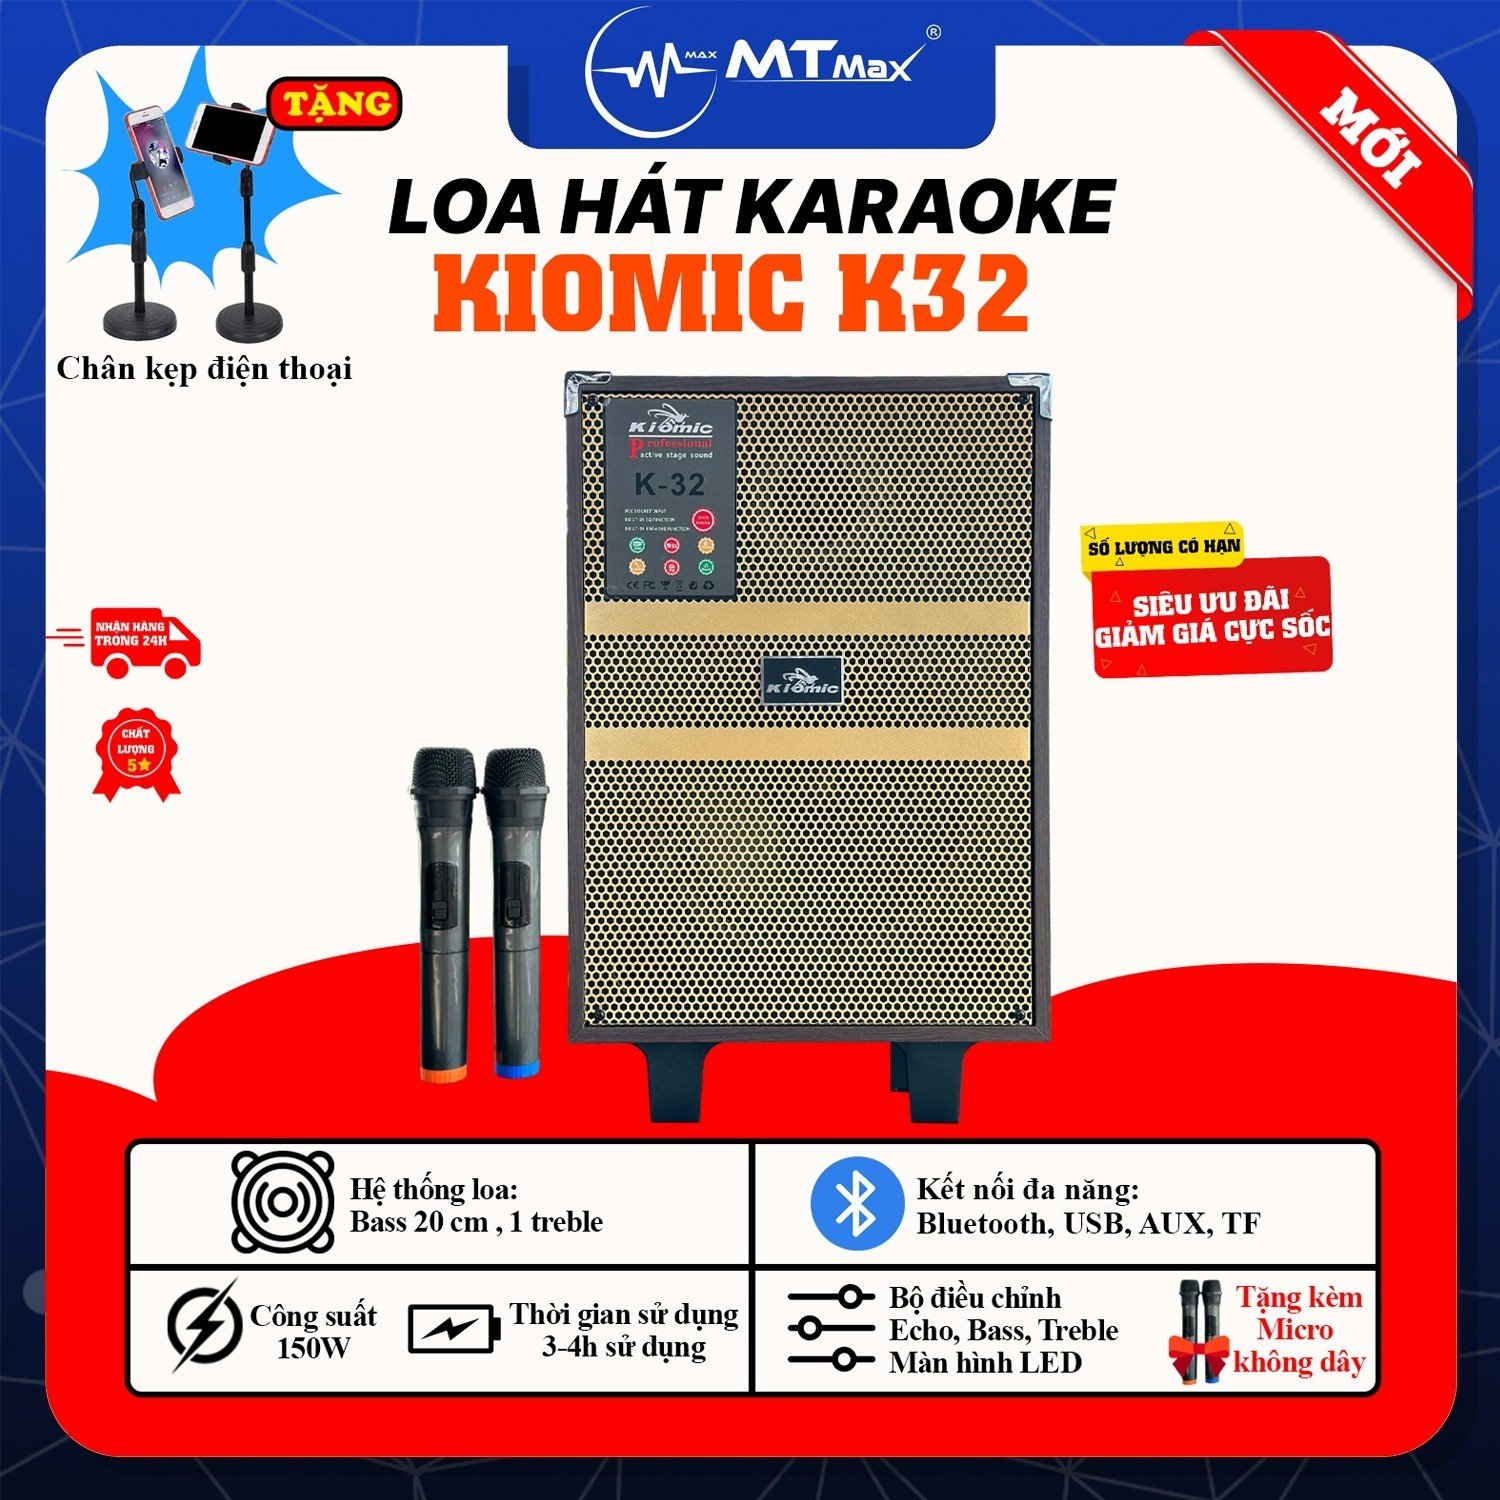 Loa Karaoke Kiomic K32 - Loa Xách Tay Bluetooth Cao Cấp Giá Rẻ Bass 20Cm Chất Âm Mạnh Mẽ Uy Lực Tặng Kèm 2 Micro Không Dây và Kẹp Điện Thoại L7 Bảo Hành 6 Tháng Hàng chính hãng